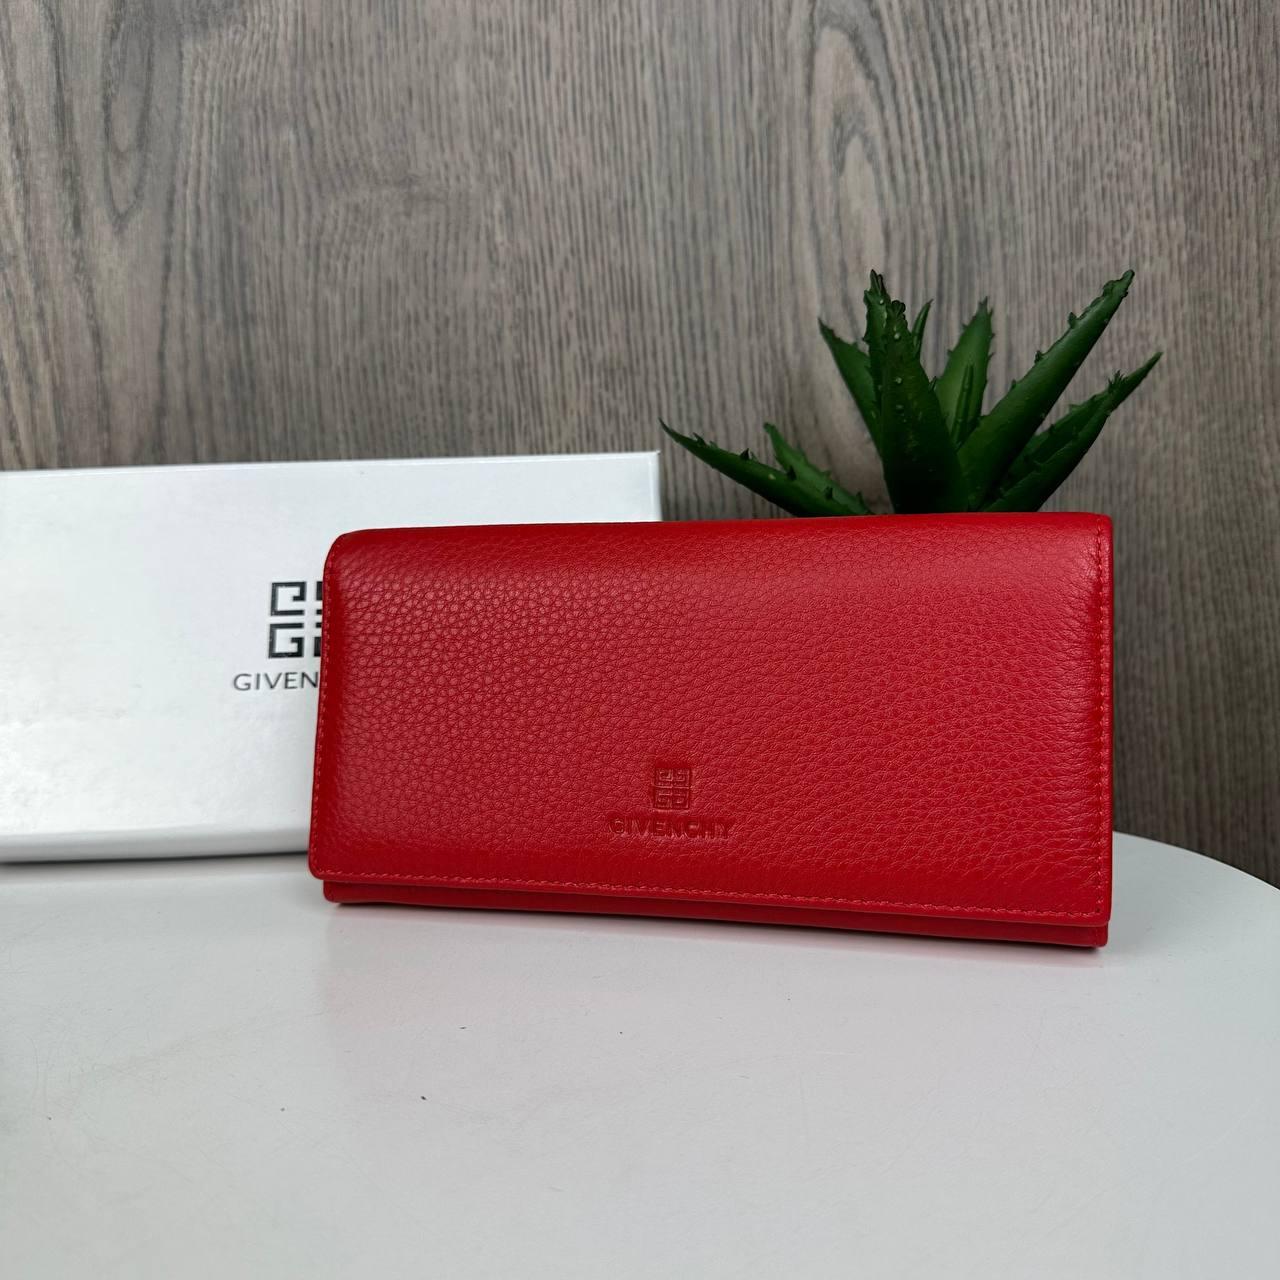 Жіночий шкіряний гаманець стиль Givenchy, якісний клатч у коробці Червоний